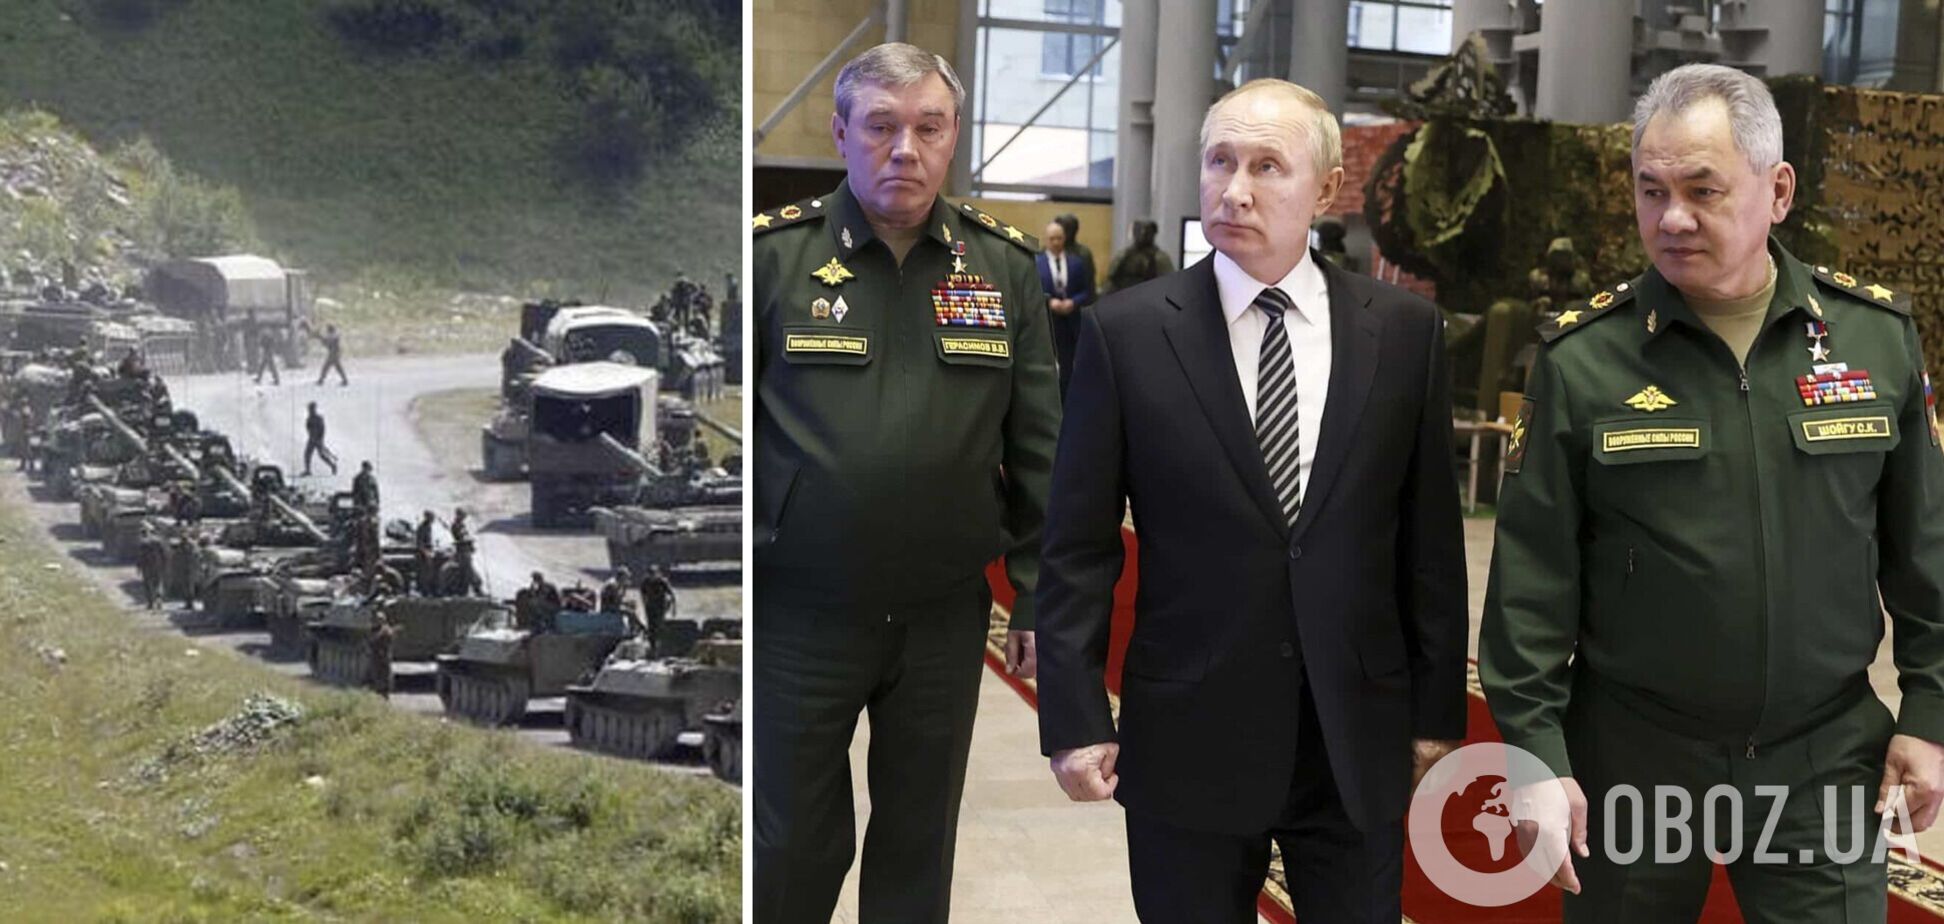 Колонны шли всю ночь: Кремль перебрасывает часть сил с Донбасса для усиления трех областей РФ – СМИ